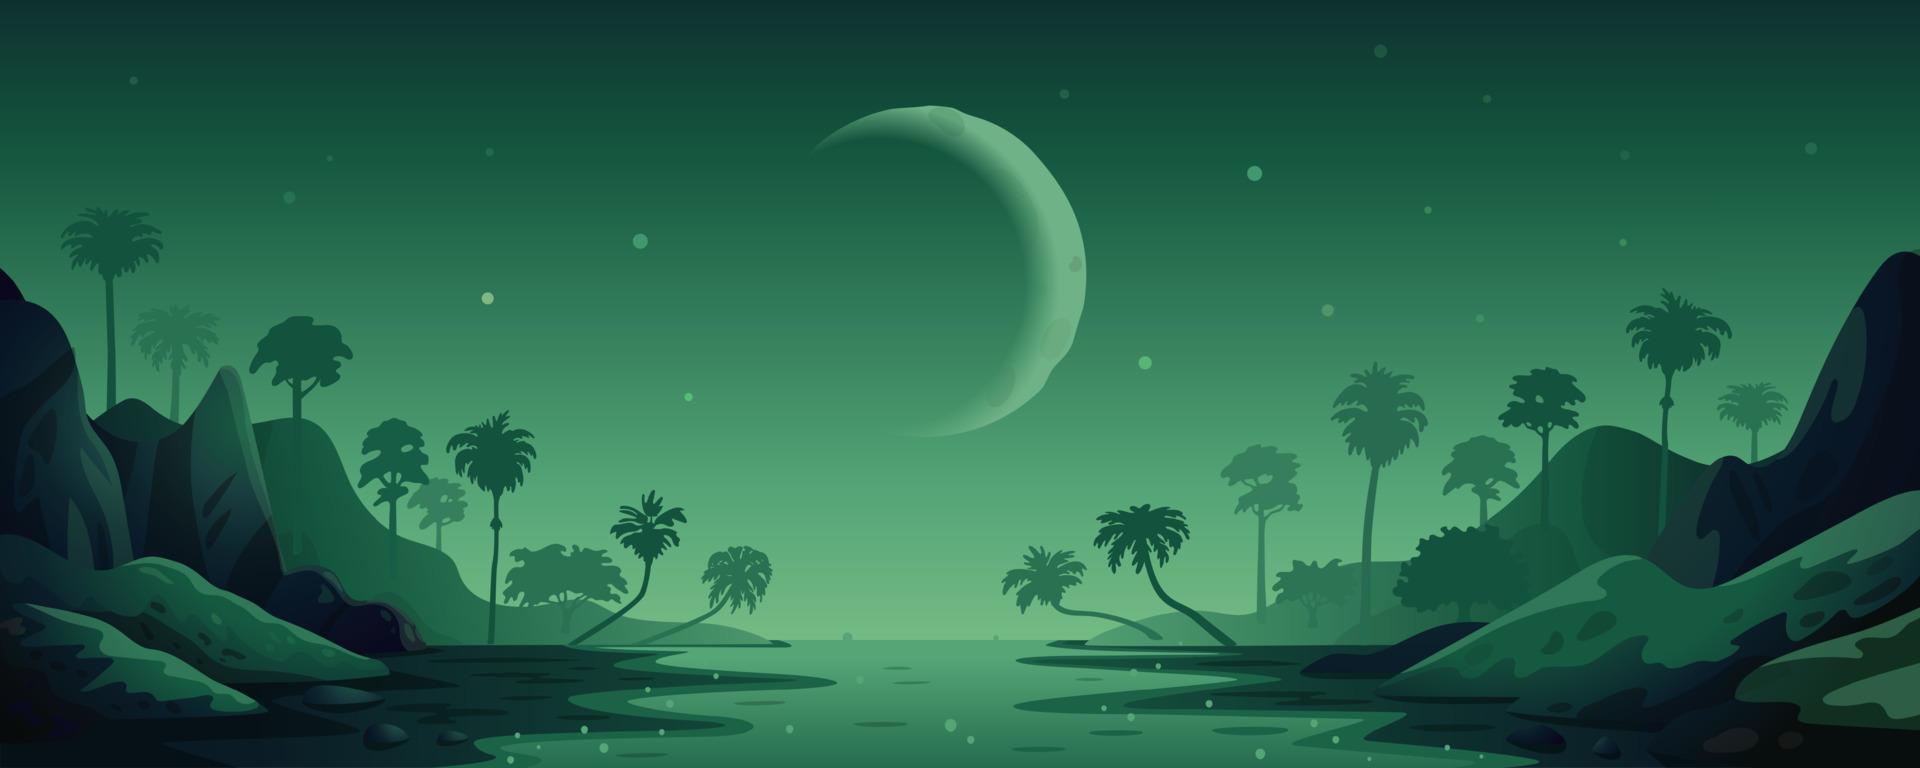 paisaje vectorial de la selva. paisaje panorámico nocturno con selva tropical y río. ilustración vectorial en estilo de dibujos animados plana vector